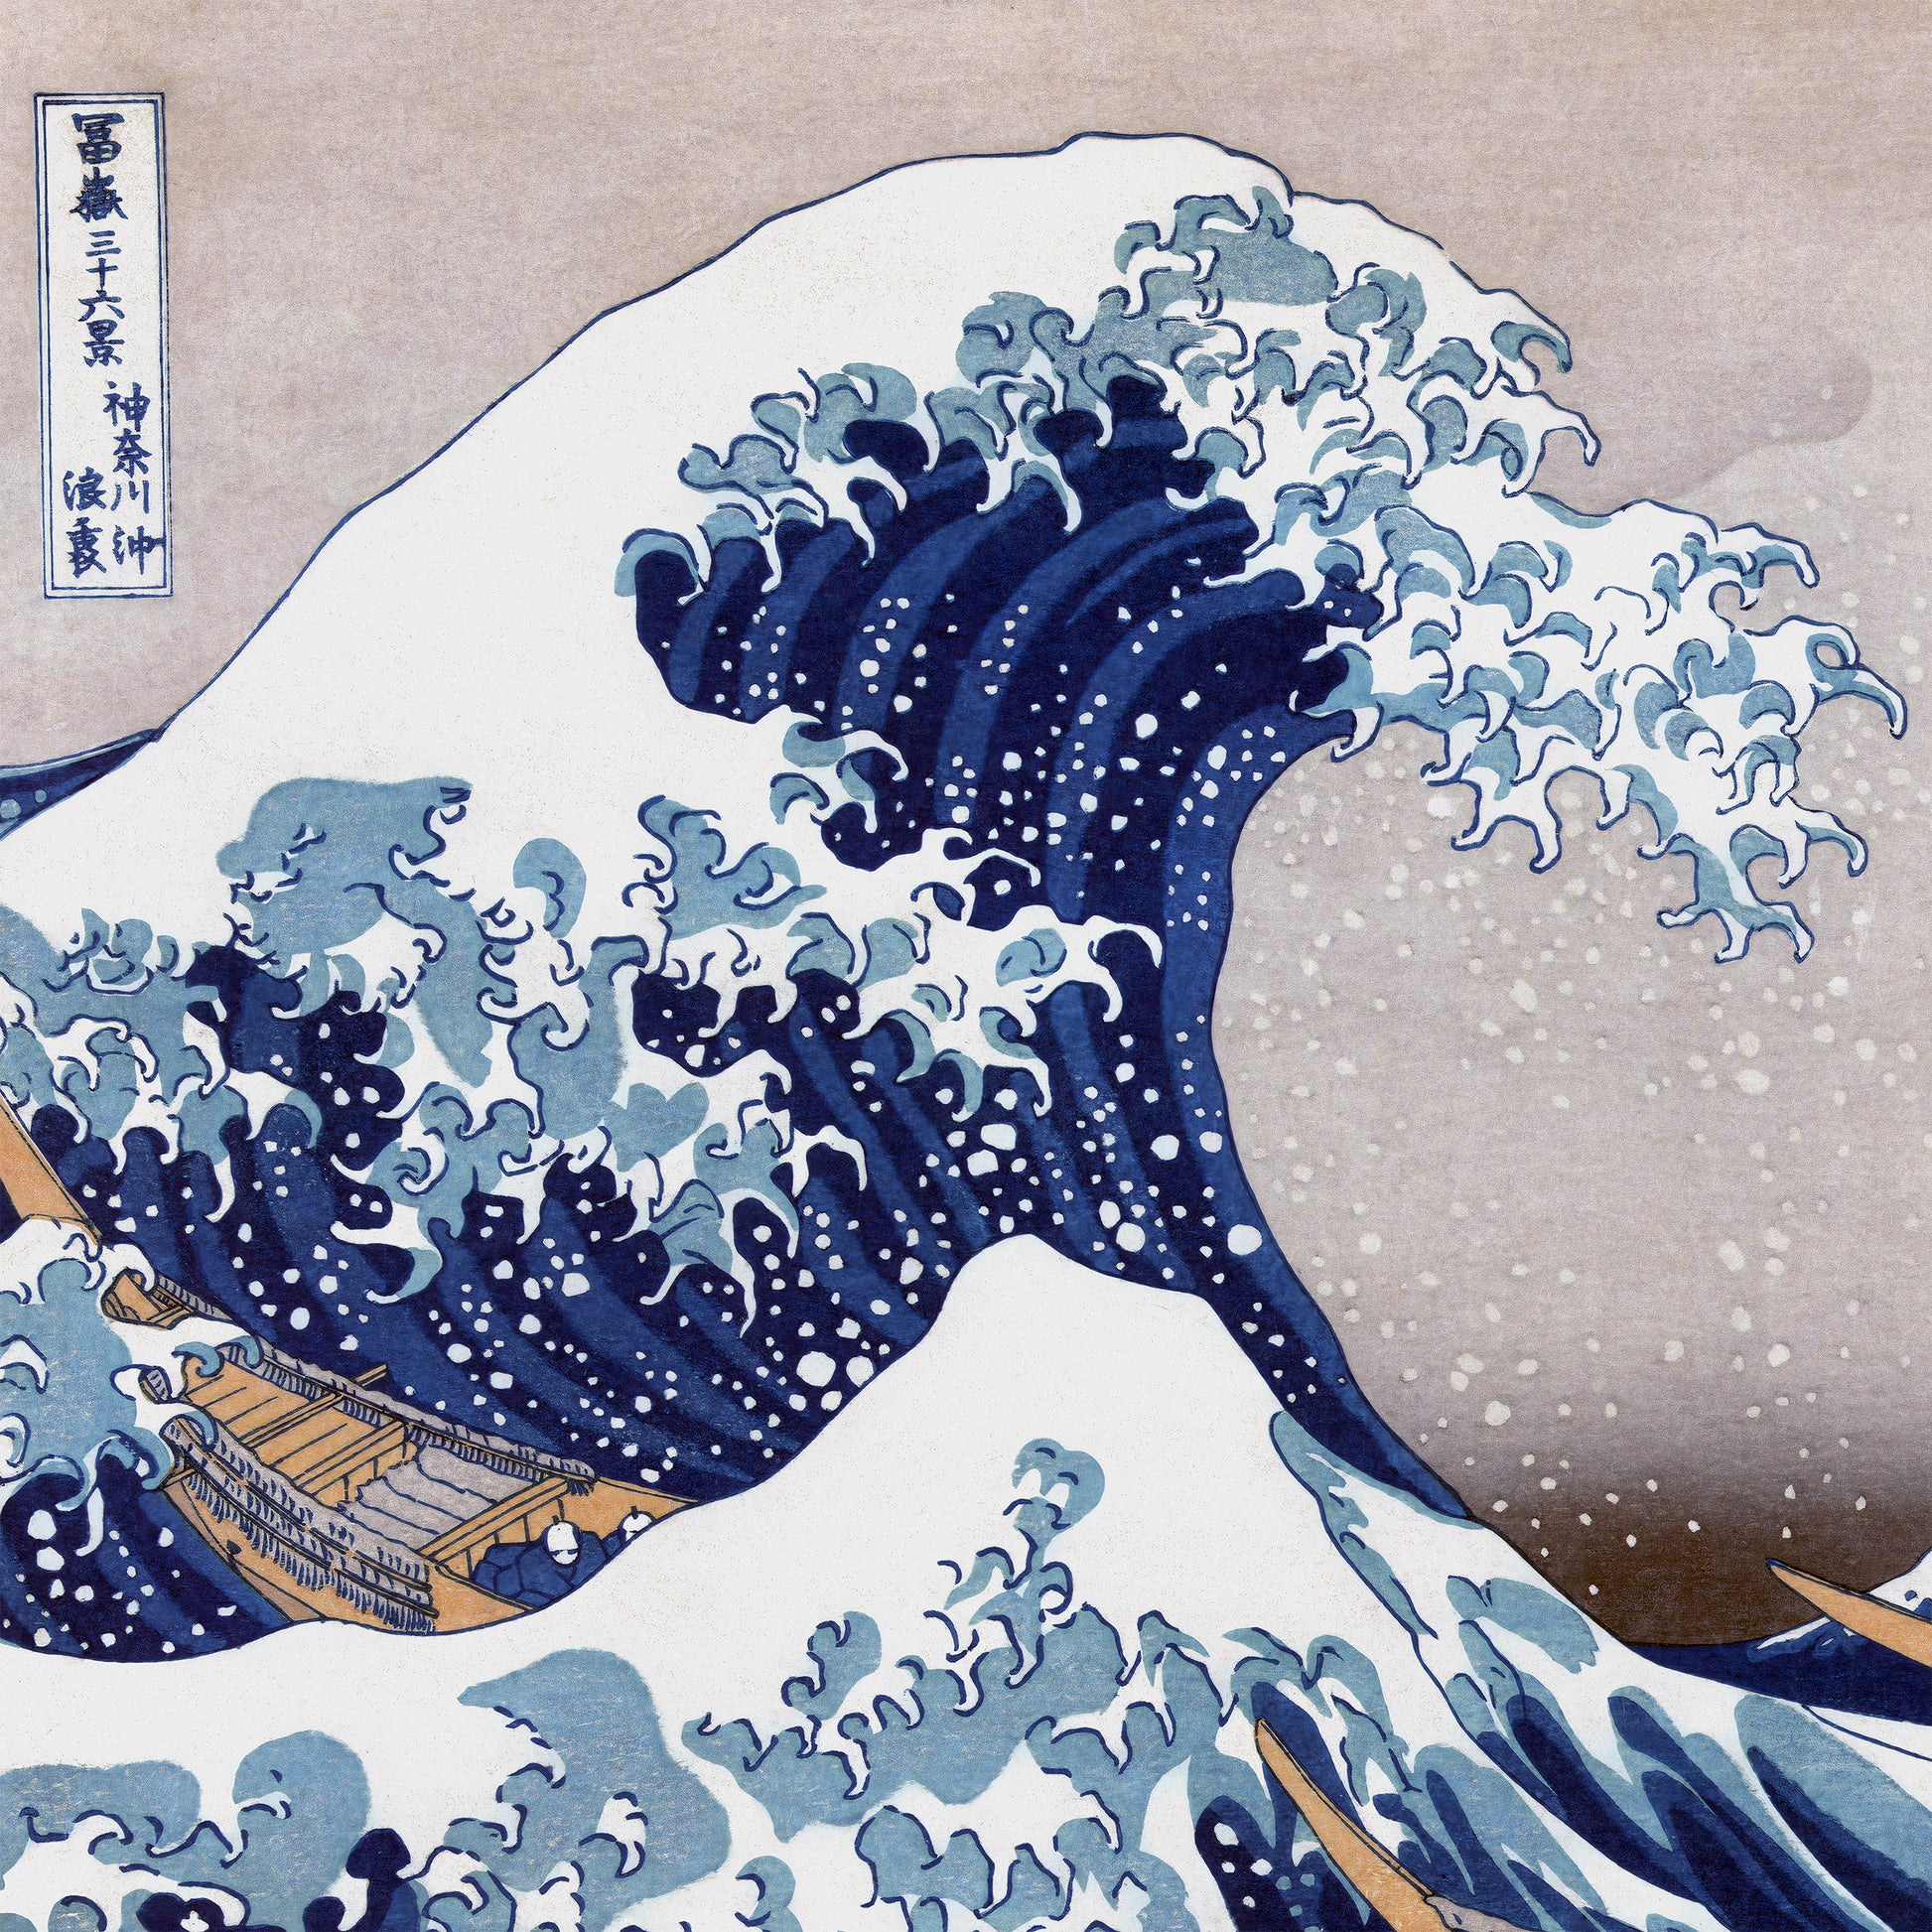 The Great Wave off Kanagawa - Hokusai – ToyoFineArt